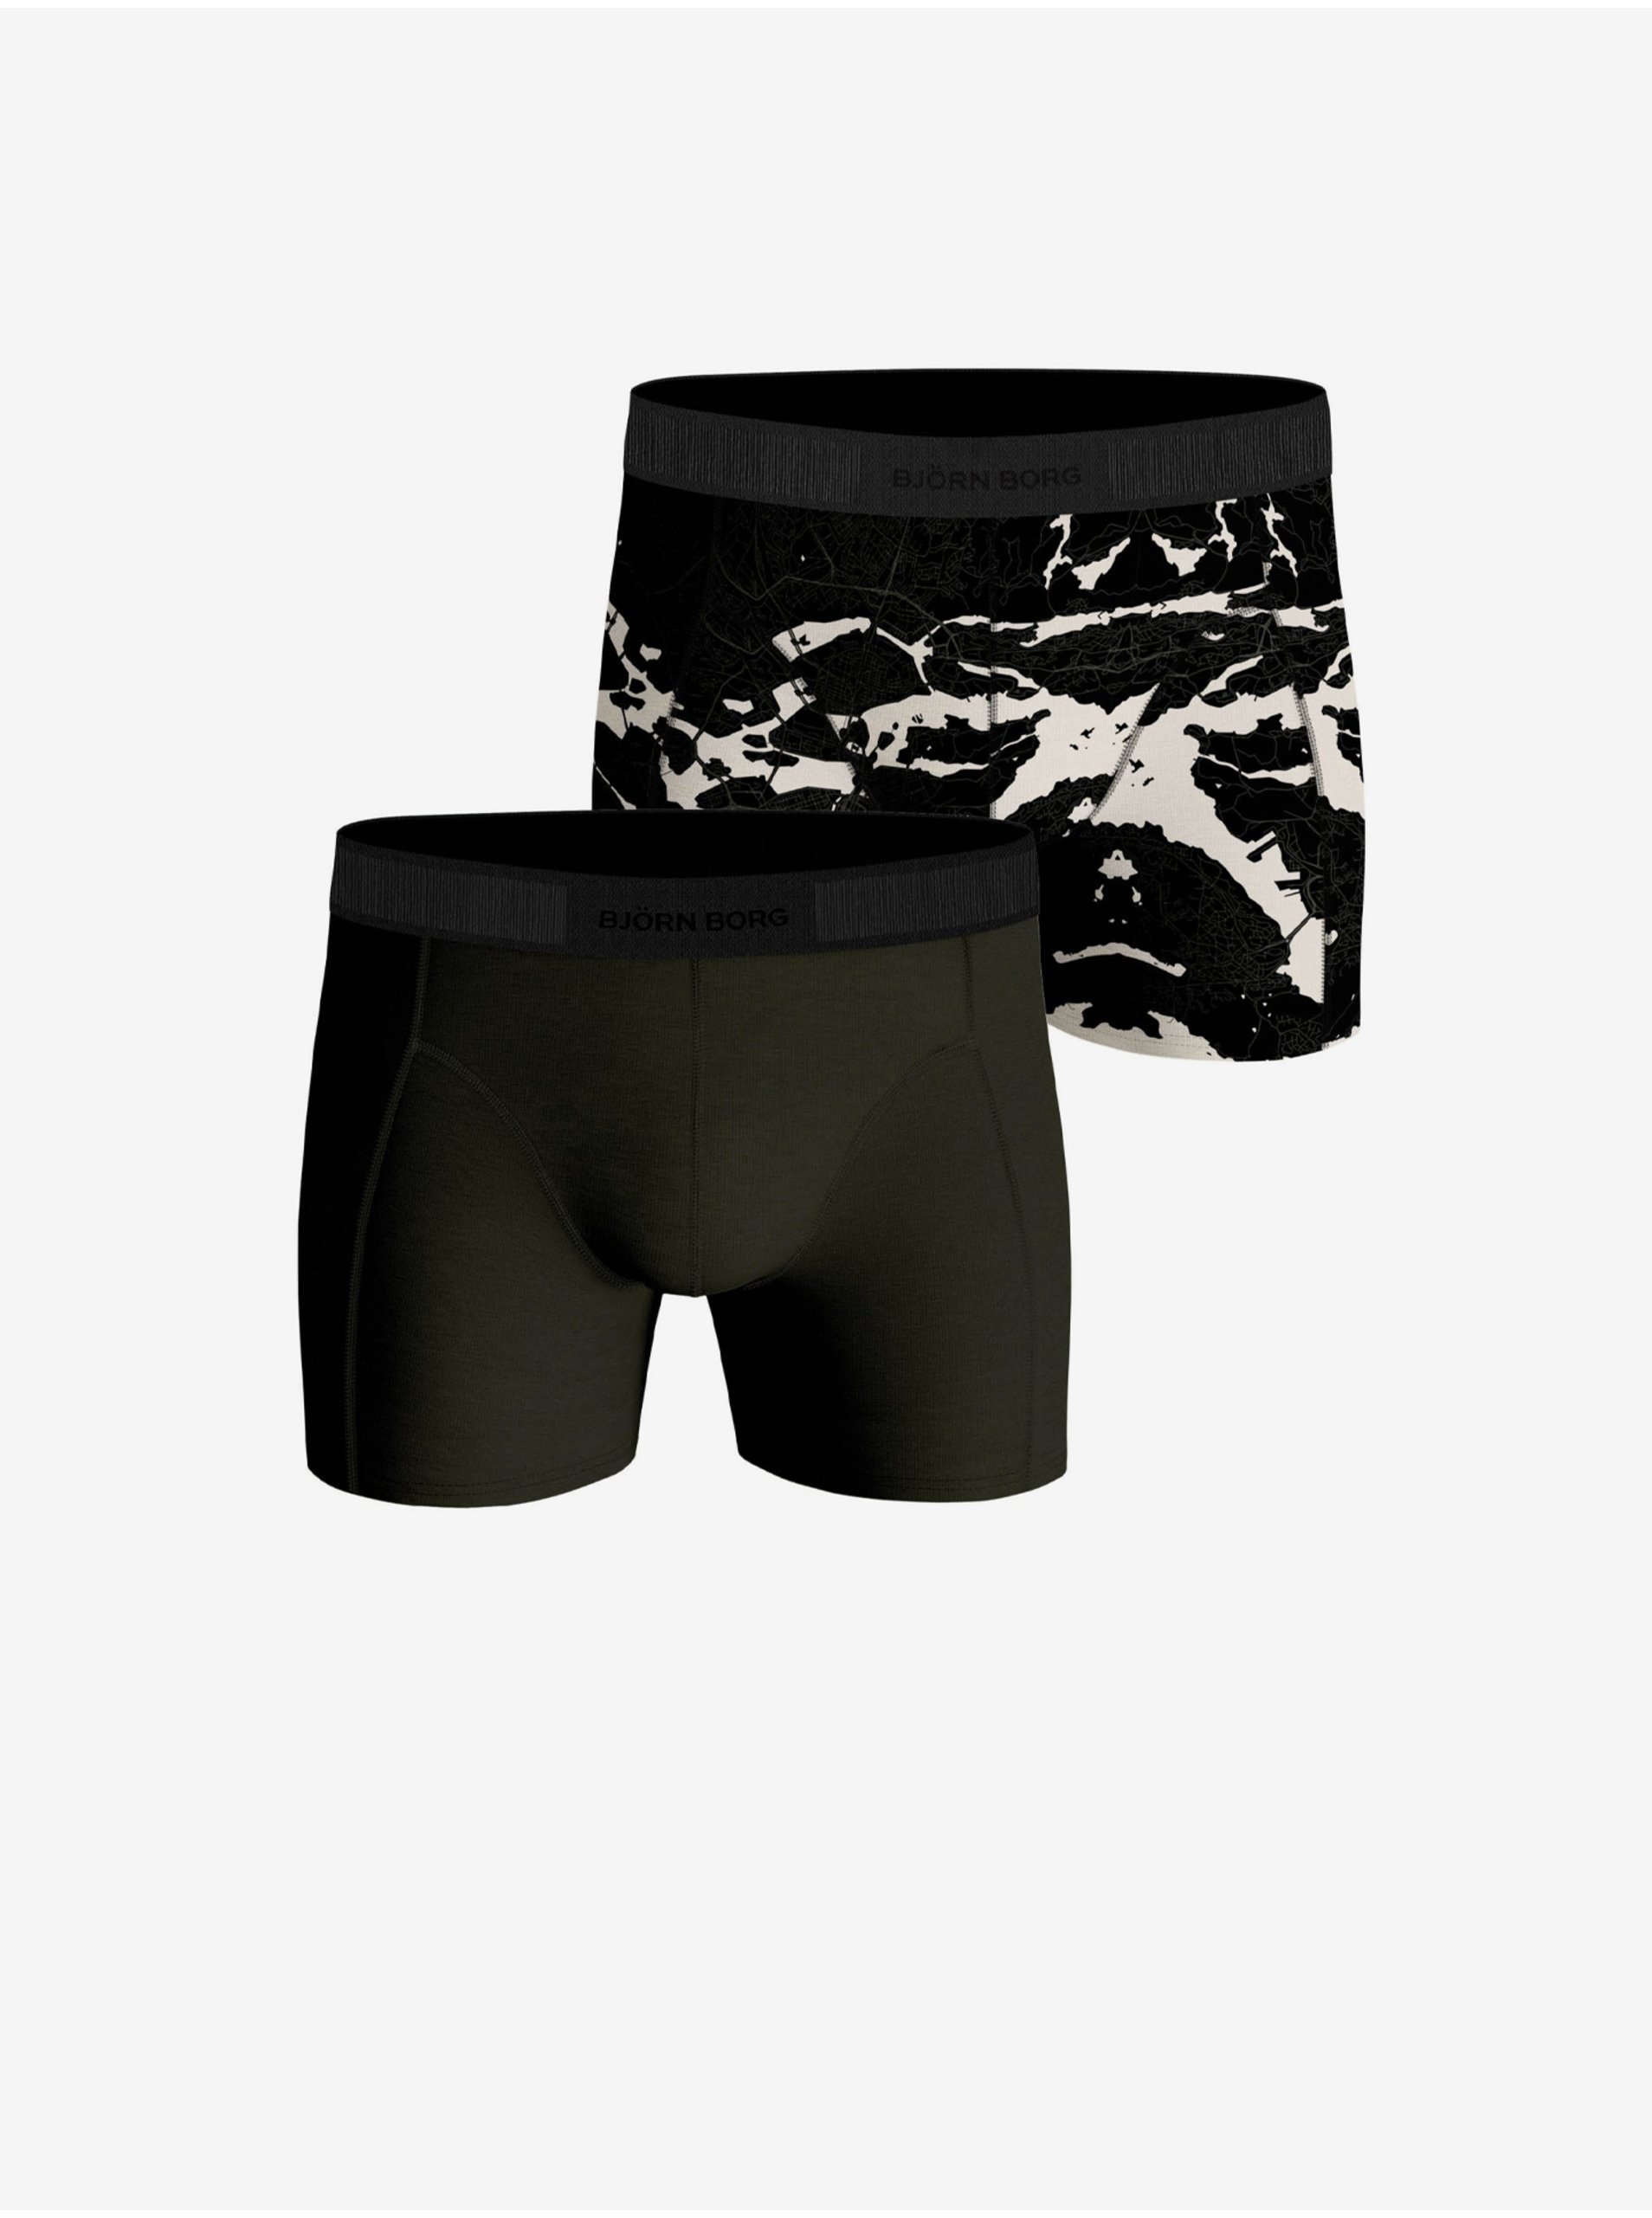 Levně Sada dvou pánských vzorovaných boxerek v khaki a černé barvě Björn Borg Core Boxer